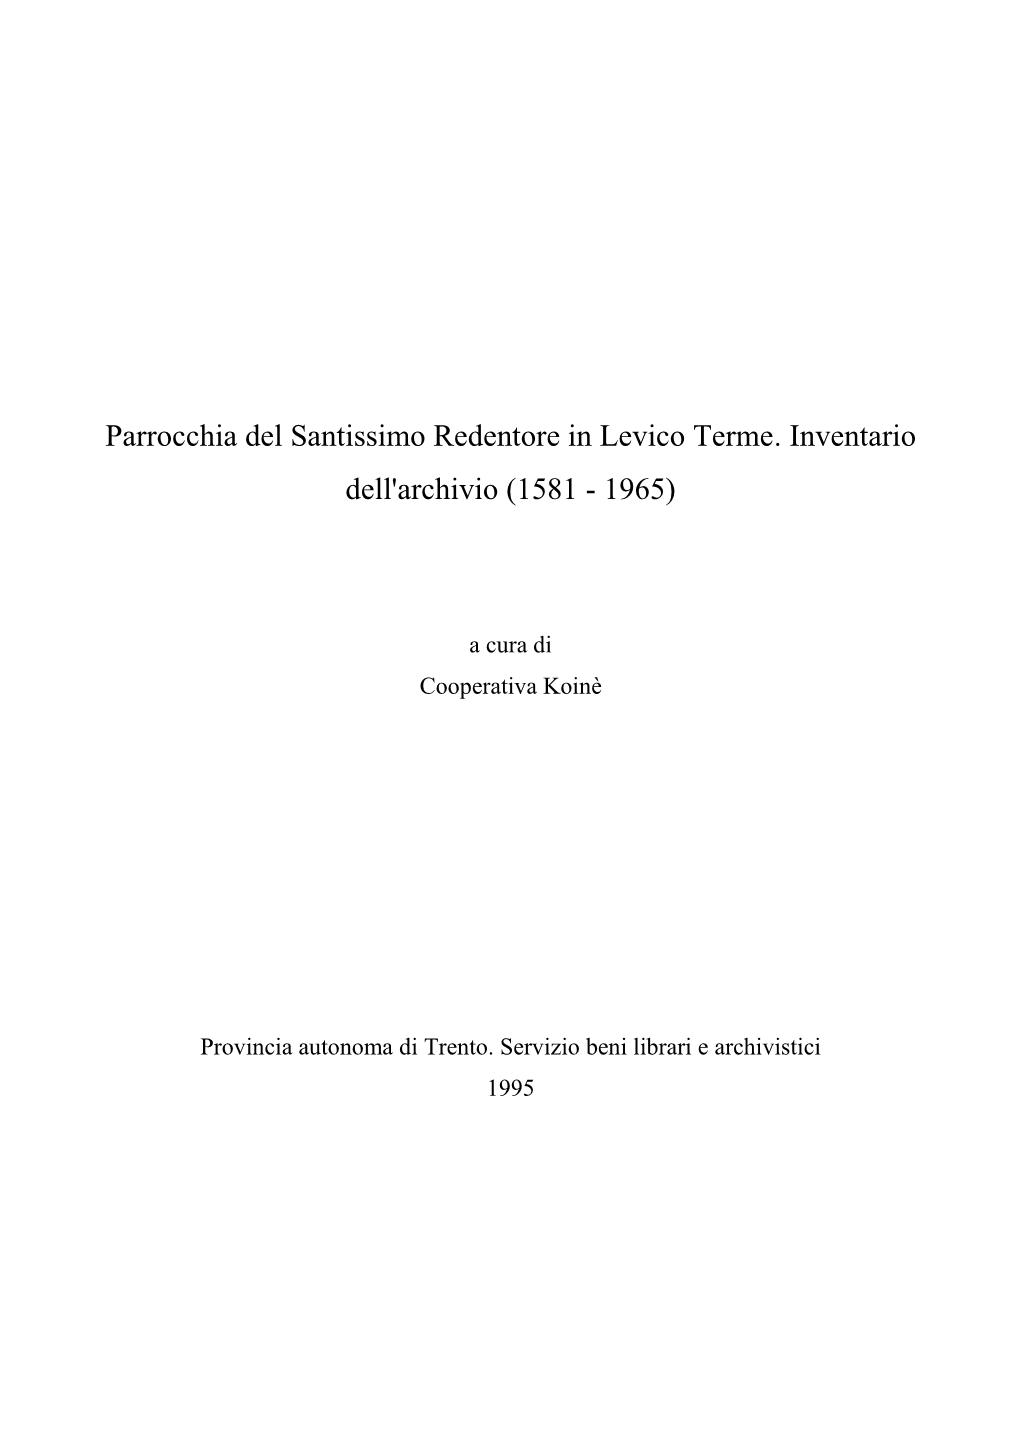 Parrocchia Del Santissimo Redentore in Levico Terme. Inventario Dell'archivio (1581 - 1965)